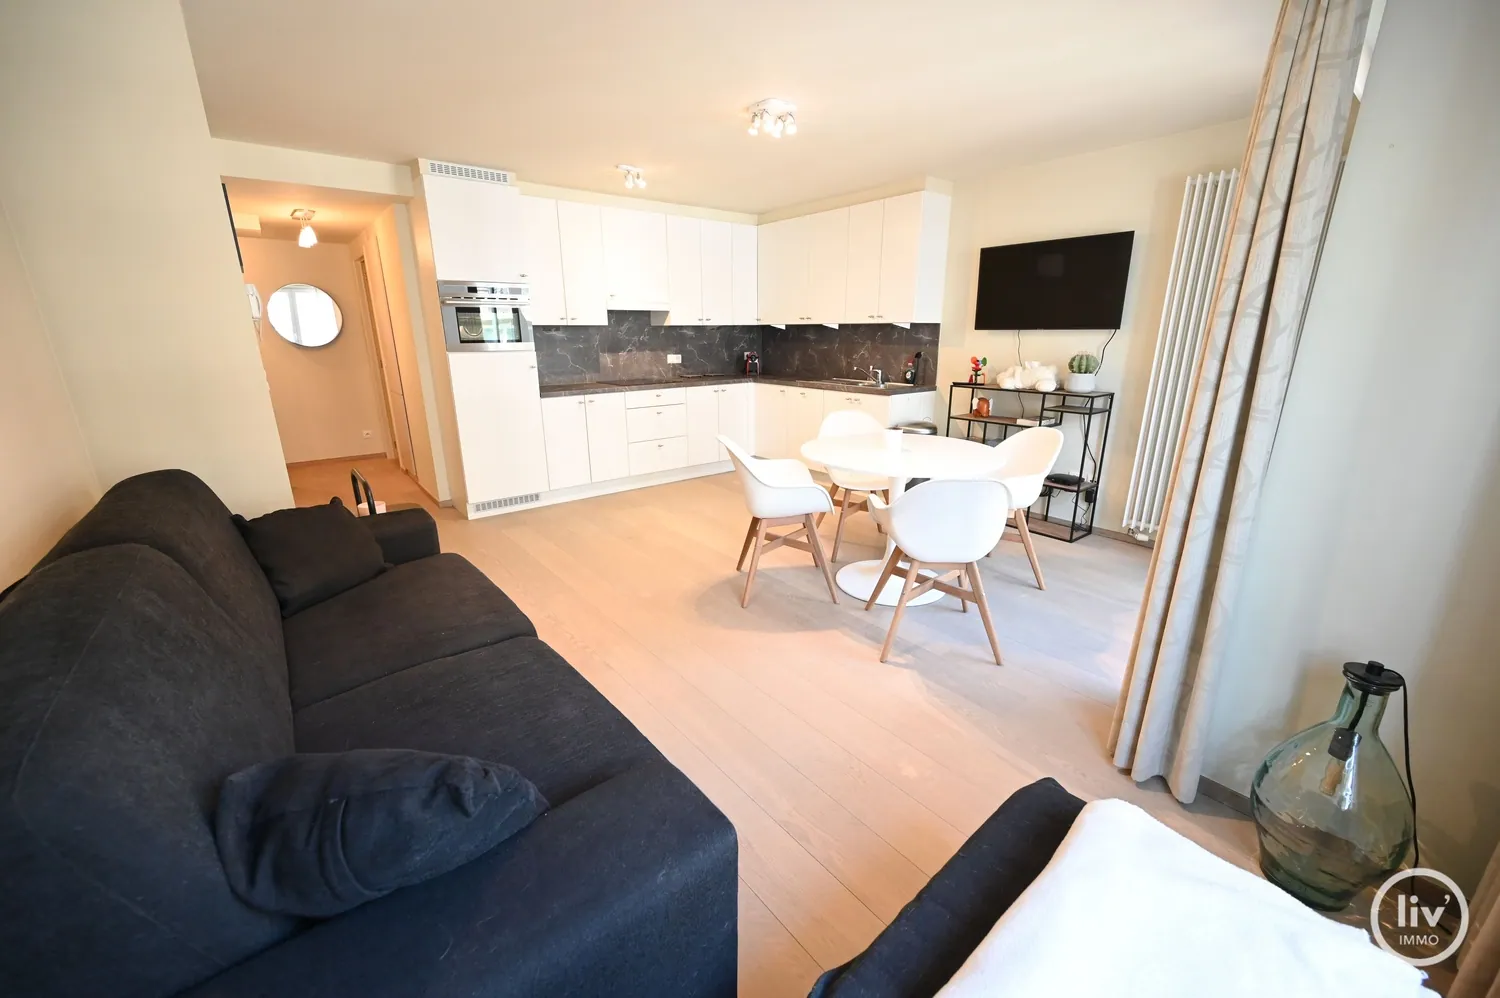 Appartement agréable avec 1 chambre à coucher situé au Leopoldlaan.